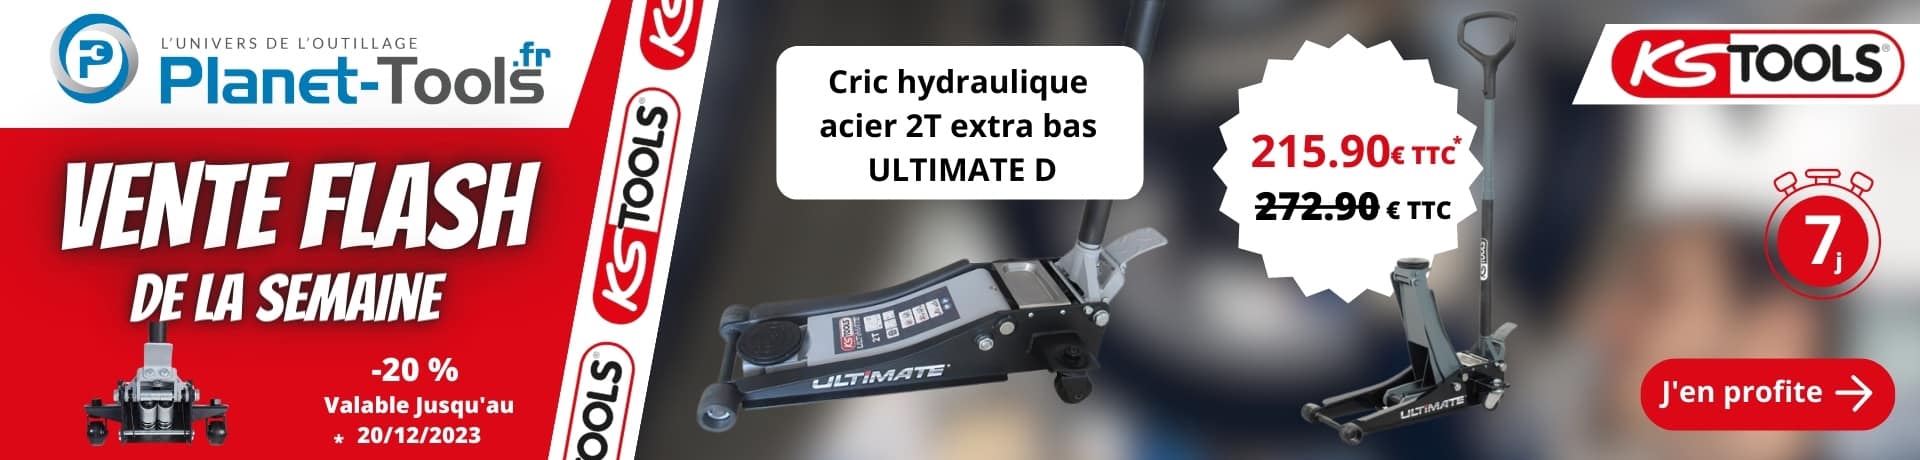 Promo Cric hydraulique Acier 2T Ks Tools - Blog Planet Tools